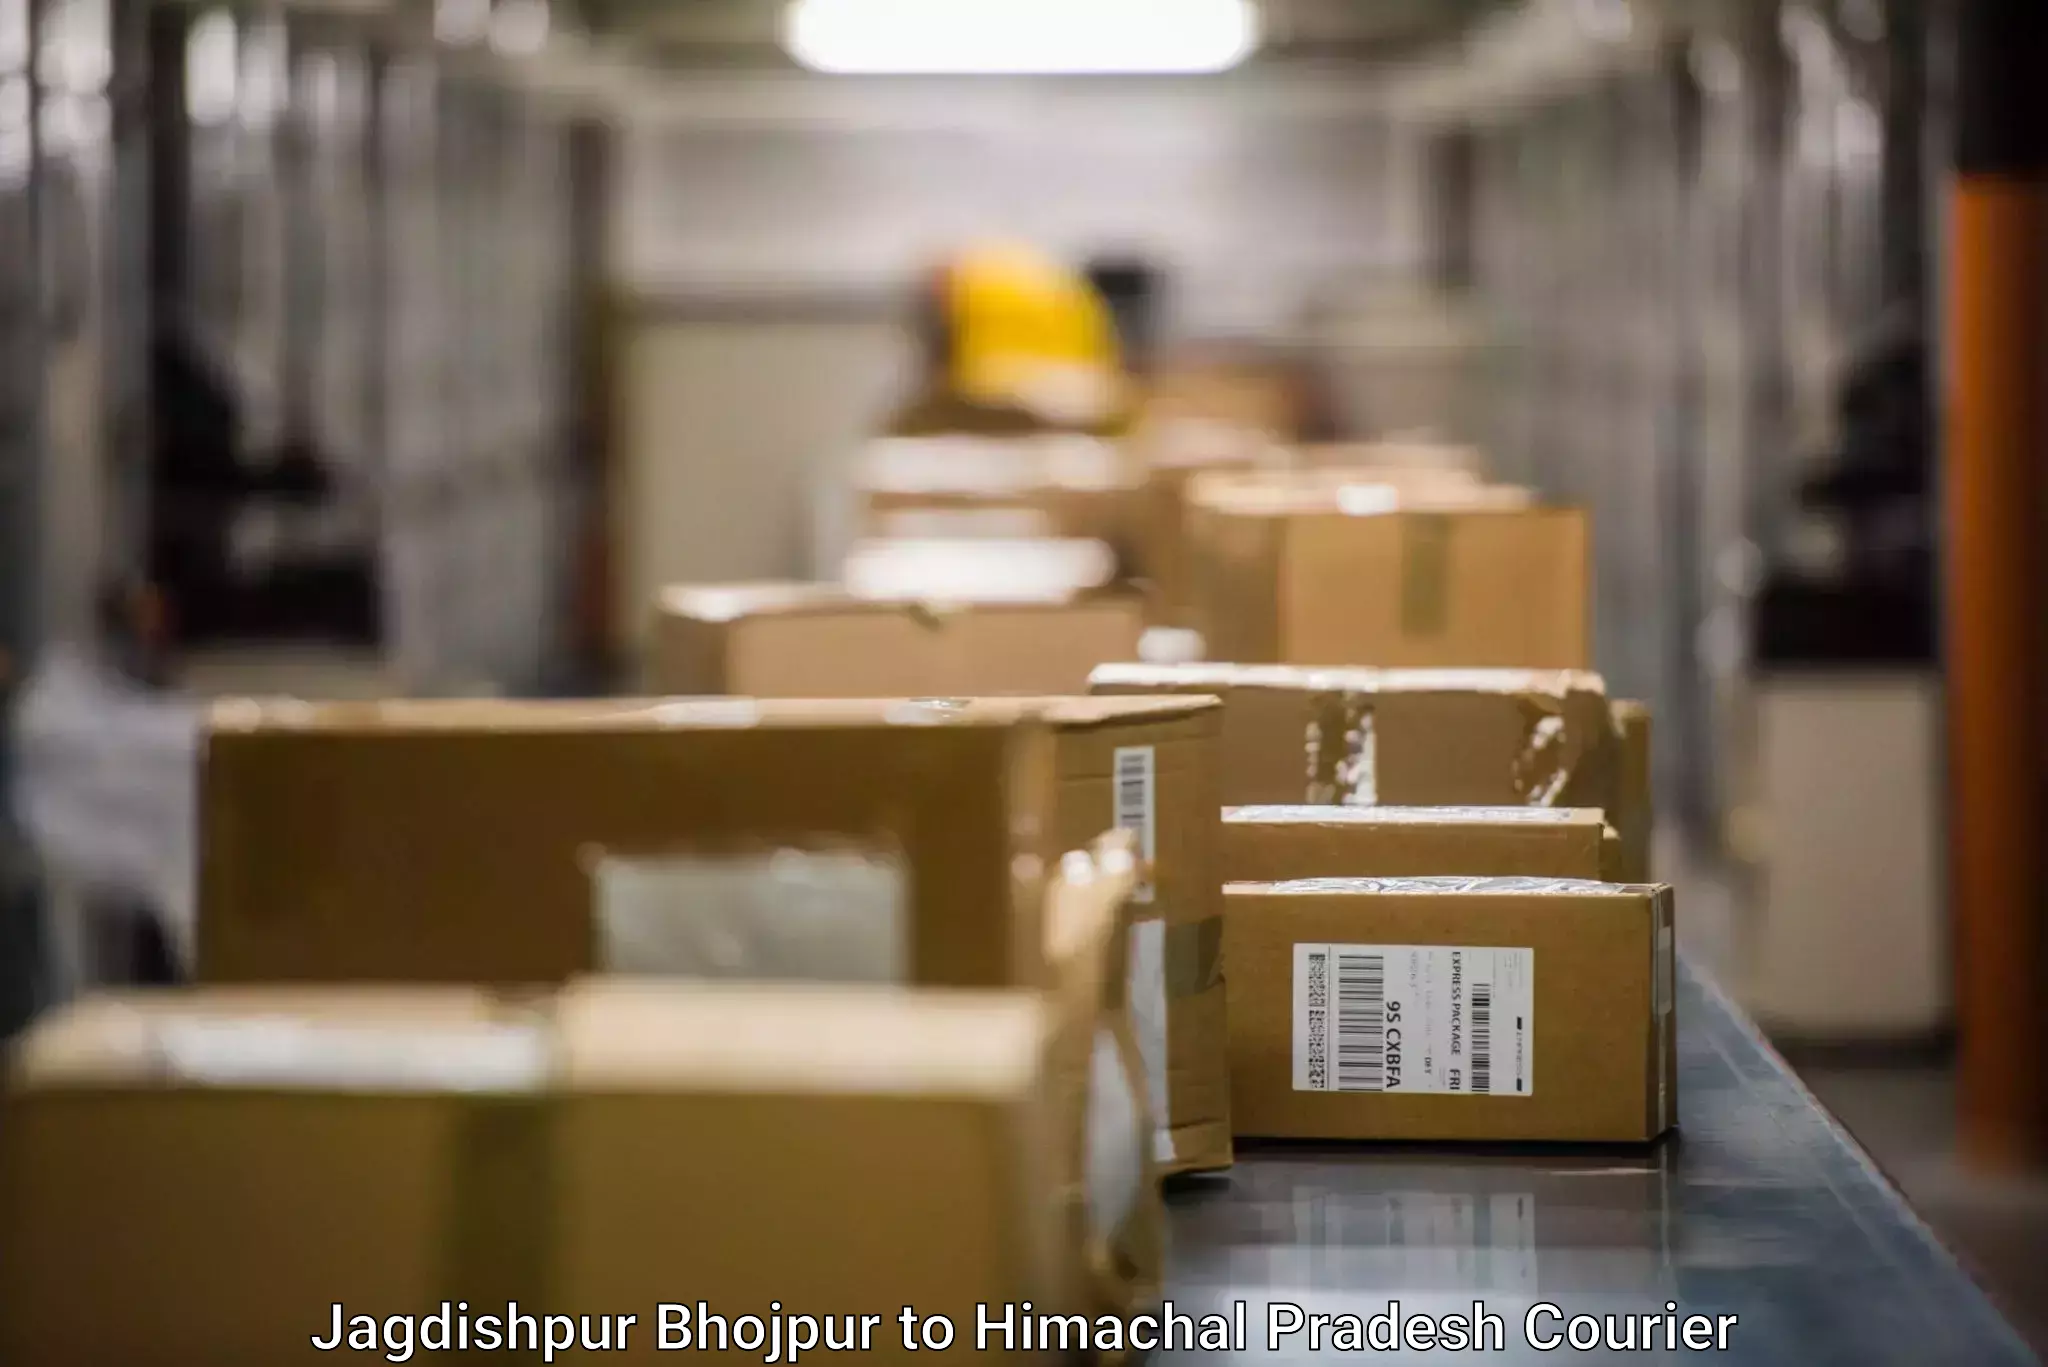 Versatile courier offerings Jagdishpur Bhojpur to Himachal Pradesh